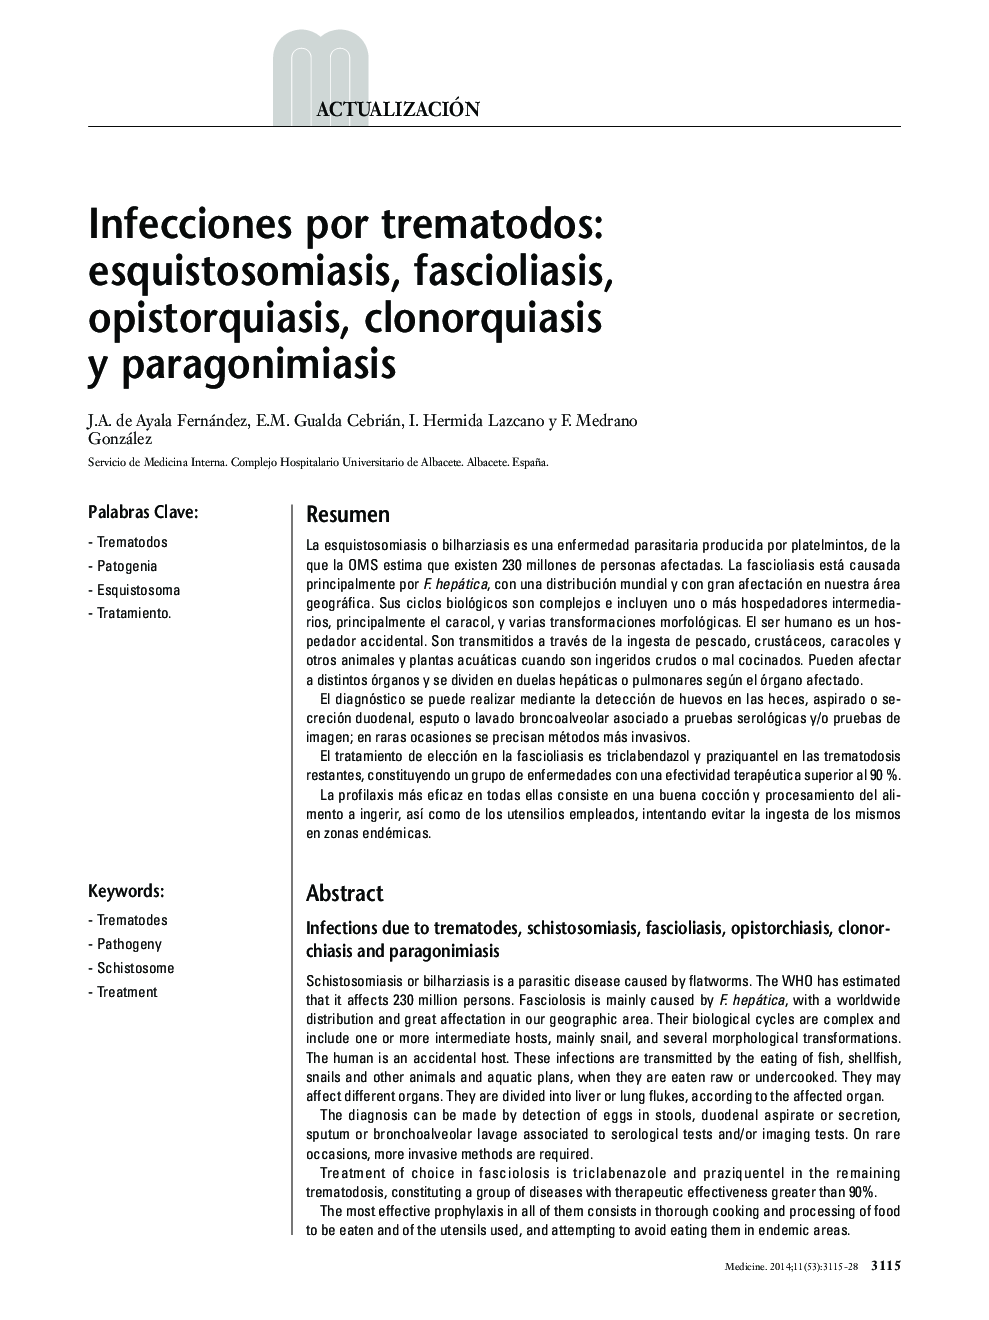 عفونت های ترماتوئید: شیستوزومیازیس، فاسیولیوز، اپیستوروسیاسیس، کولونکازیس و پاراژونیمایس 